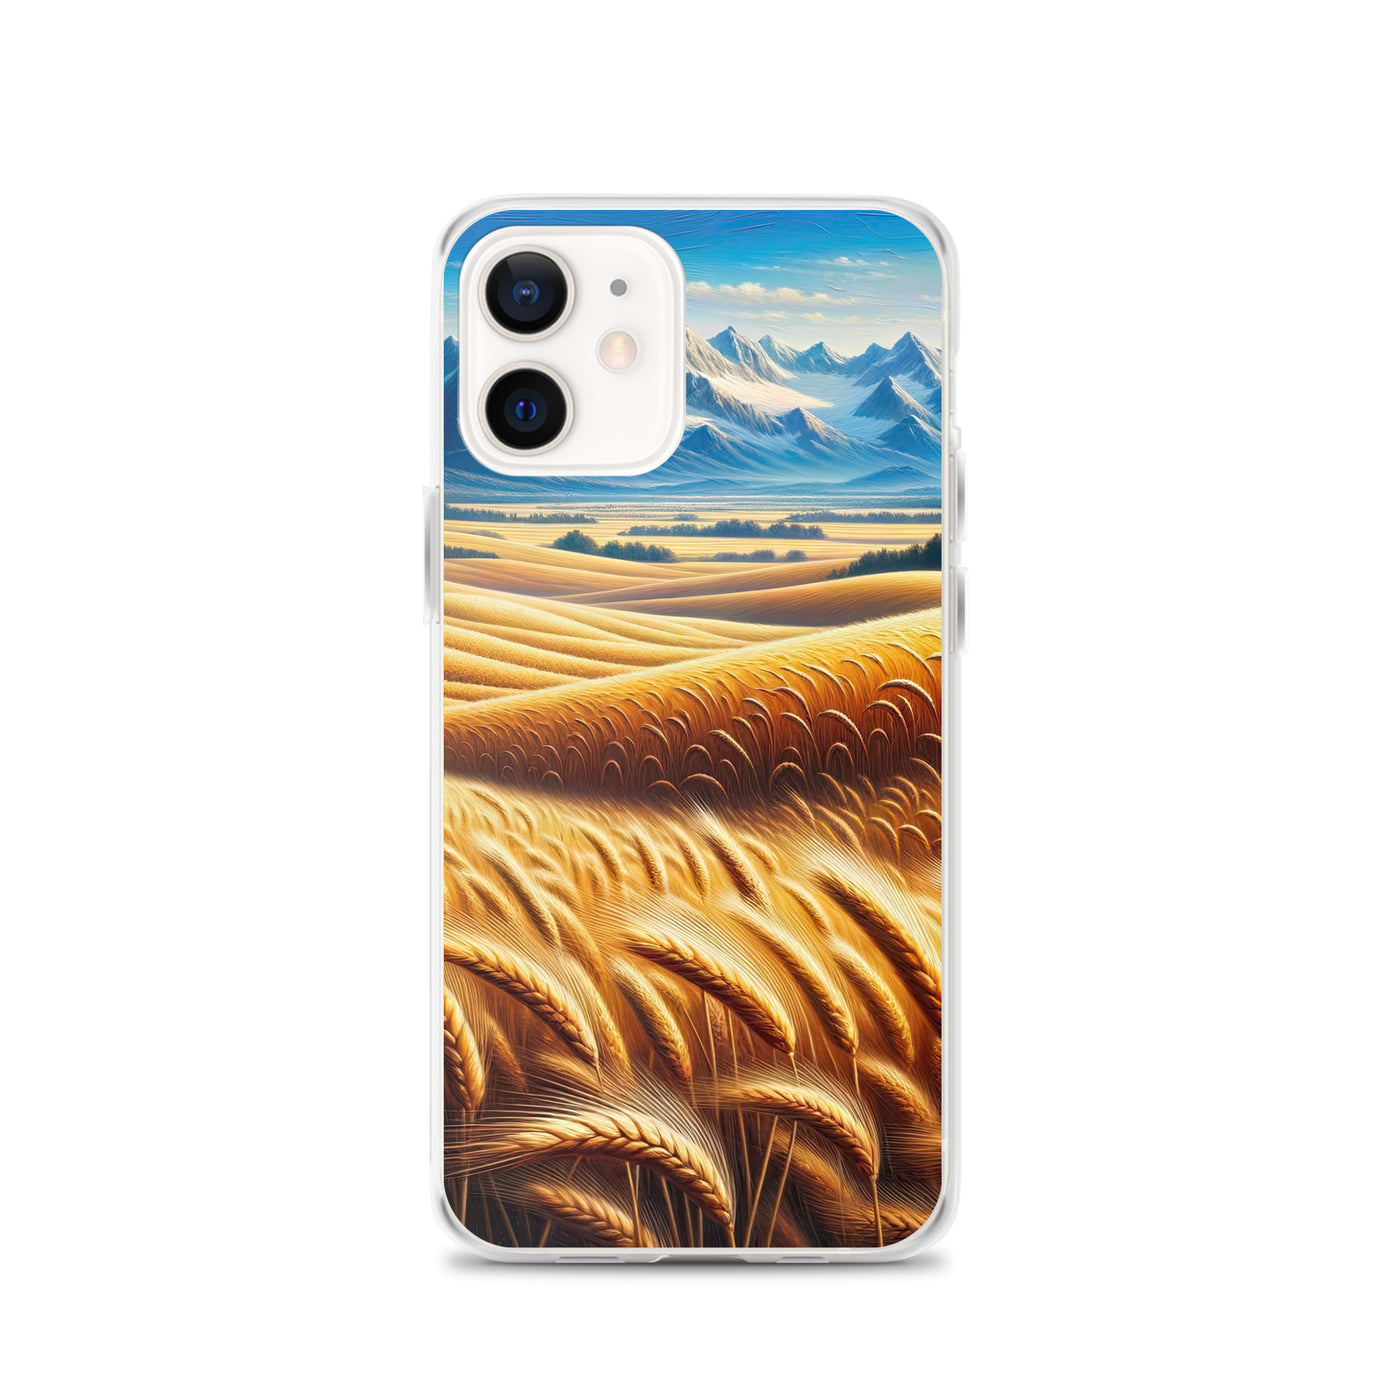 Ölgemälde eines weiten bayerischen Weizenfeldes, golden im Wind (TR) - iPhone Schutzhülle (durchsichtig) xxx yyy zzz iPhone 12